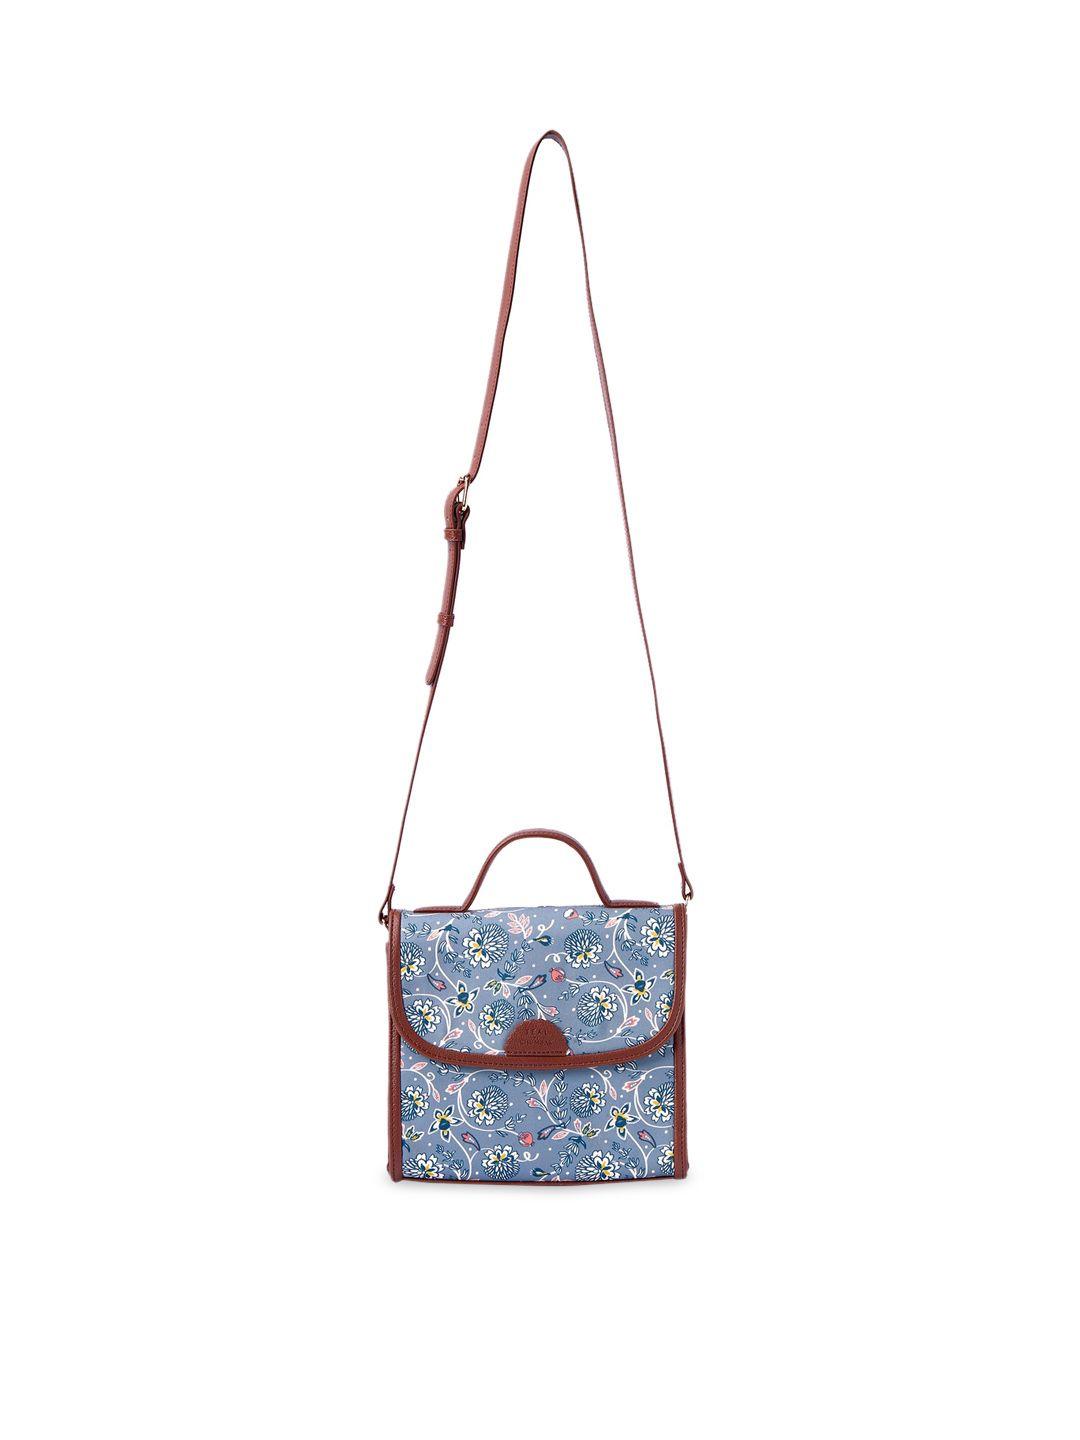 teal by chumbak floral printed sling bag